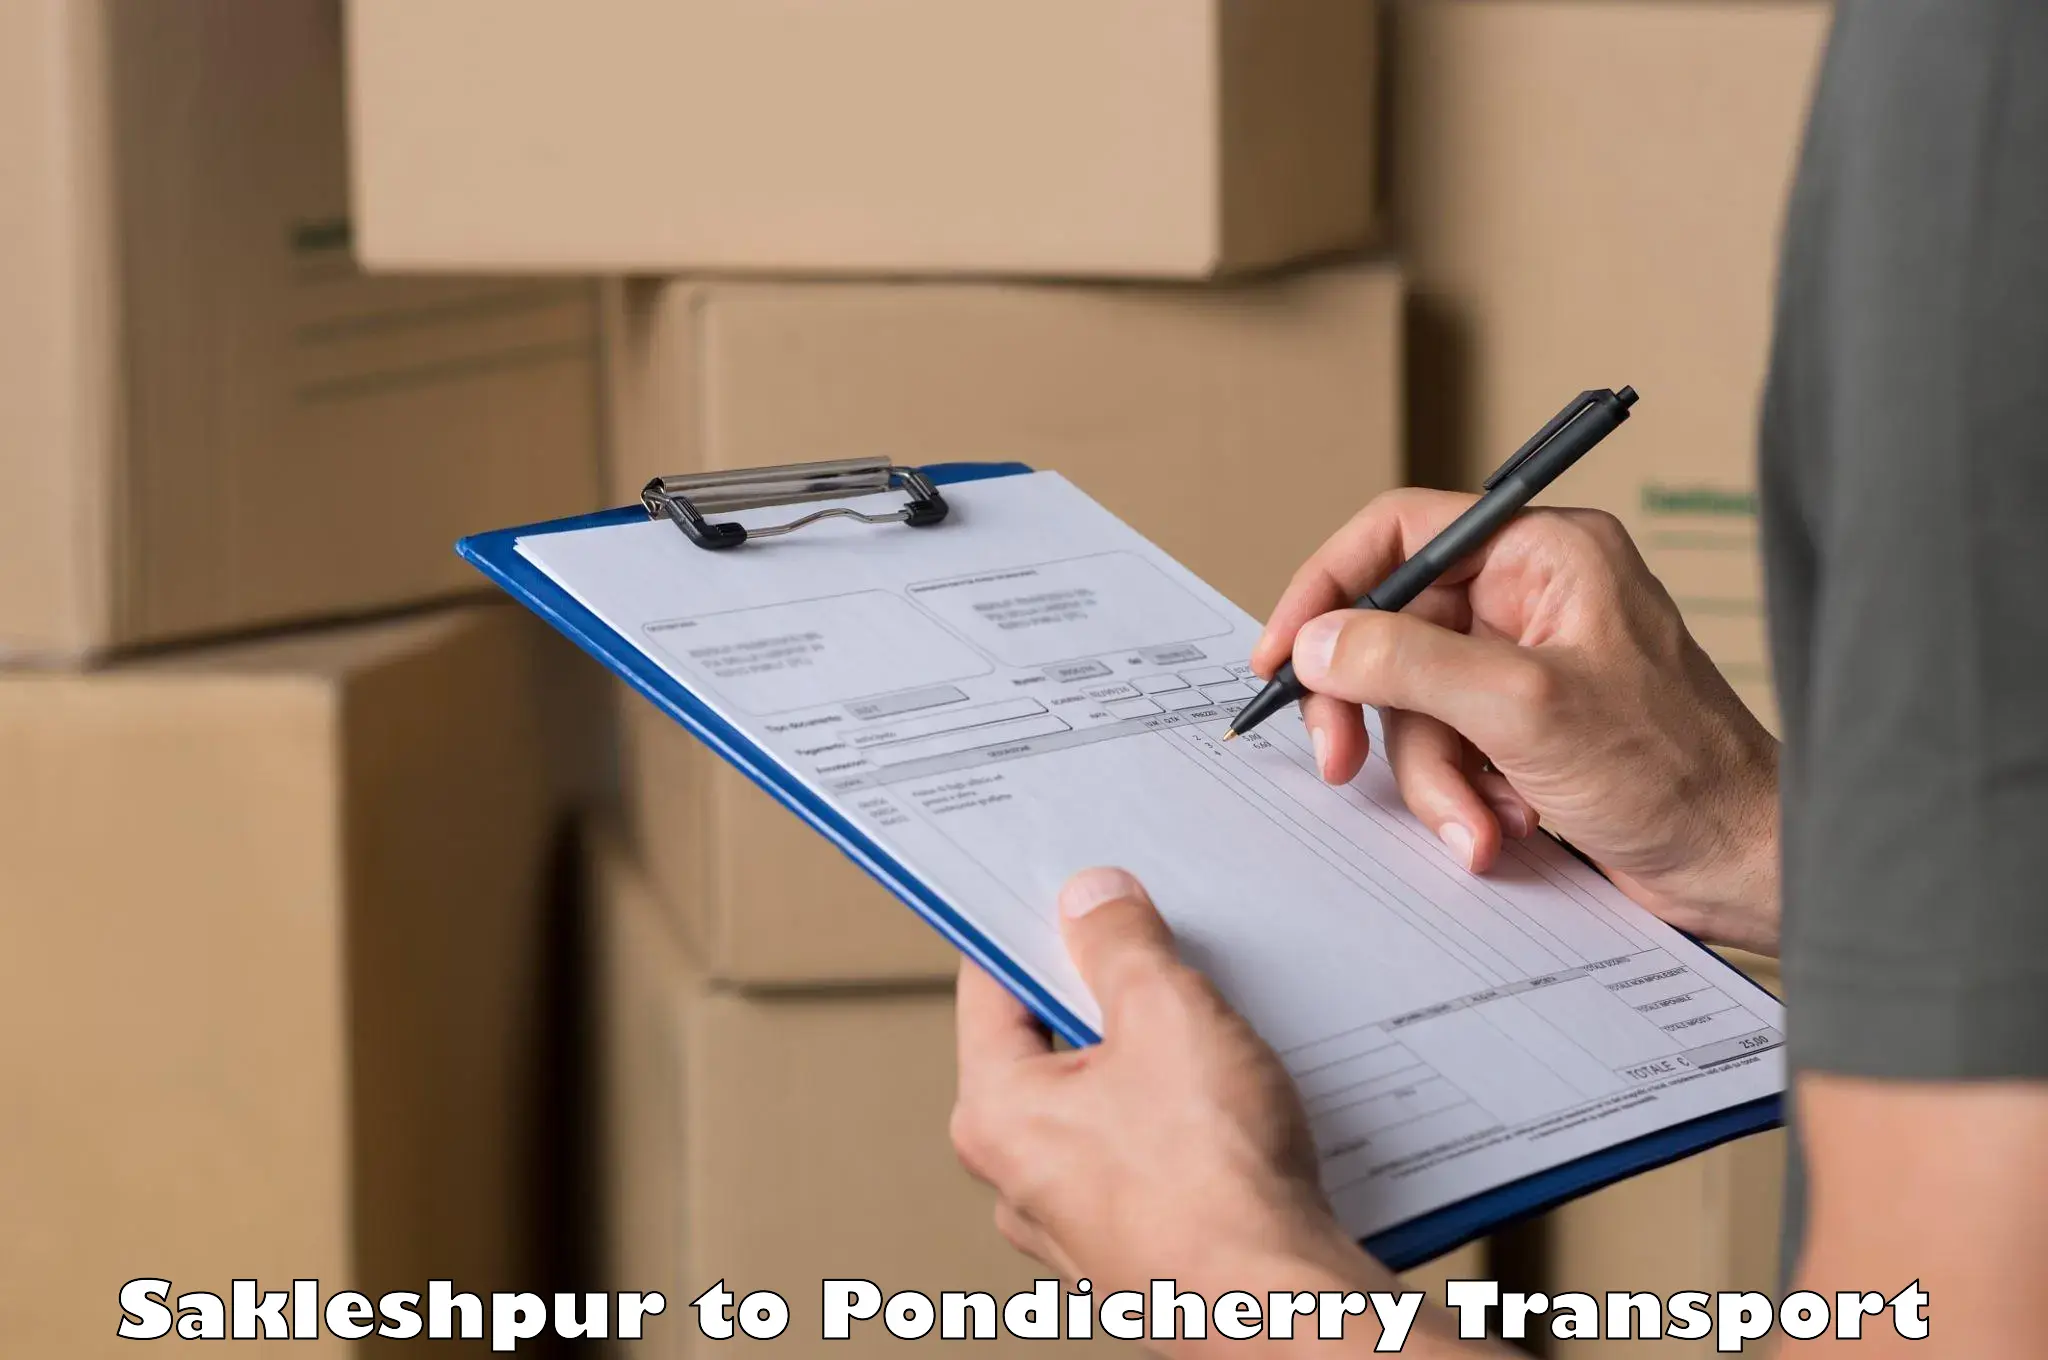 Interstate transport services Sakleshpur to Pondicherry